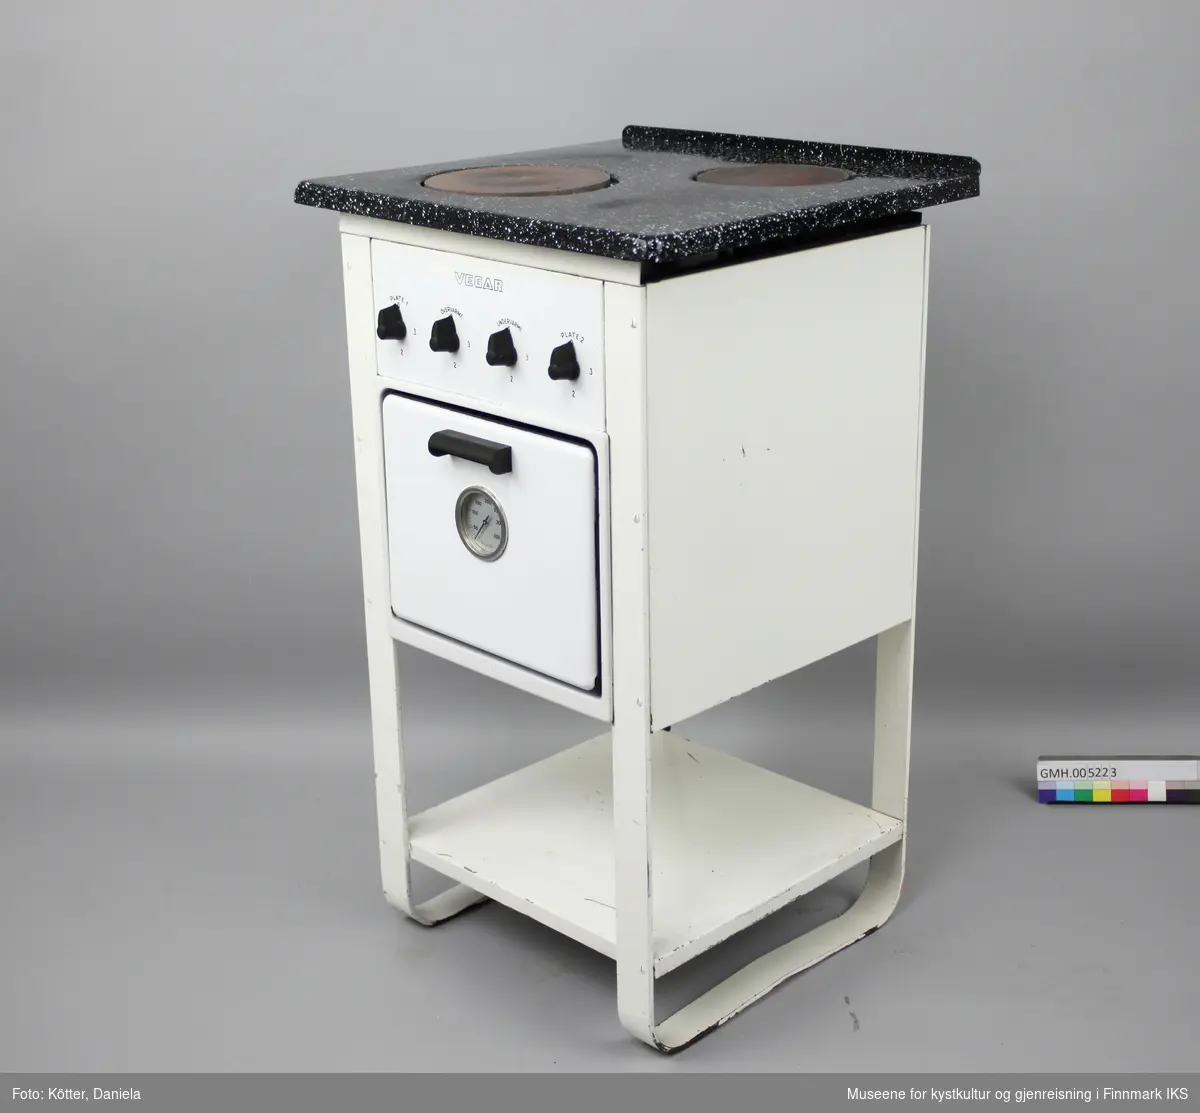 Den elektriske komfyren "Vegar K2" har to kokeplater, en stekeovn og en hylleplate nederst. Fram- og bakben er utformet som buer på hver side. Apparatet har fire vrideknapper, en for hver plate, samt for over- og undervarme i ovnen. På ovnsdøra er det et rundt termometer som viser temperaturen i ovnen. I ovnen er det to lave og et dypt stekebrett, samt en rist. Typeskiltet befinner seg på baksida. Strømkabelen er svært porøs og mye av isoleringen har falt av.